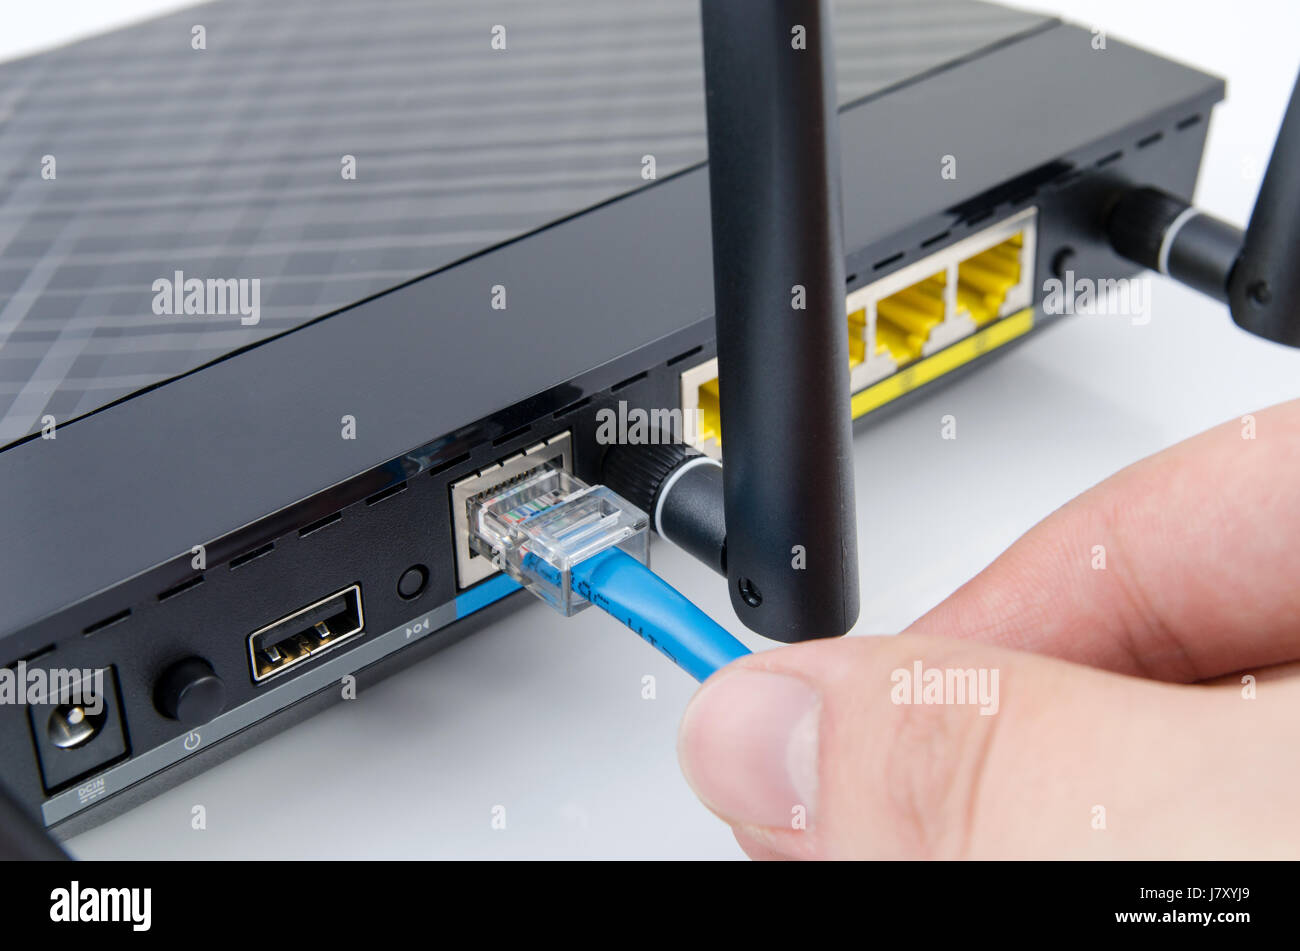 Ethernet port router immagini e fotografie stock ad alta risoluzione - Alamy